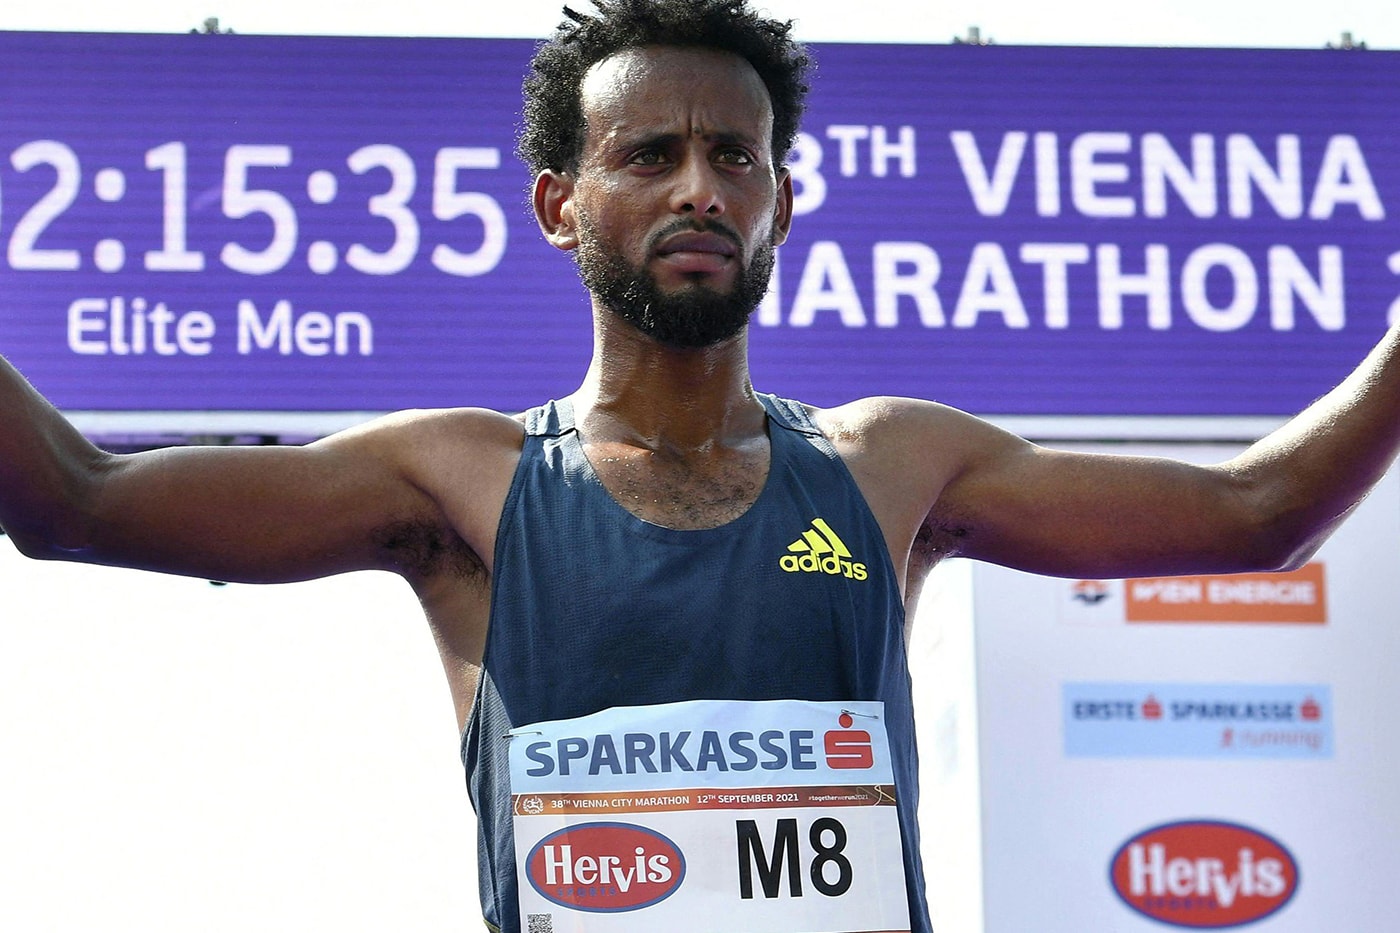 Vienna Marathon Winner Disqualified For Shoes